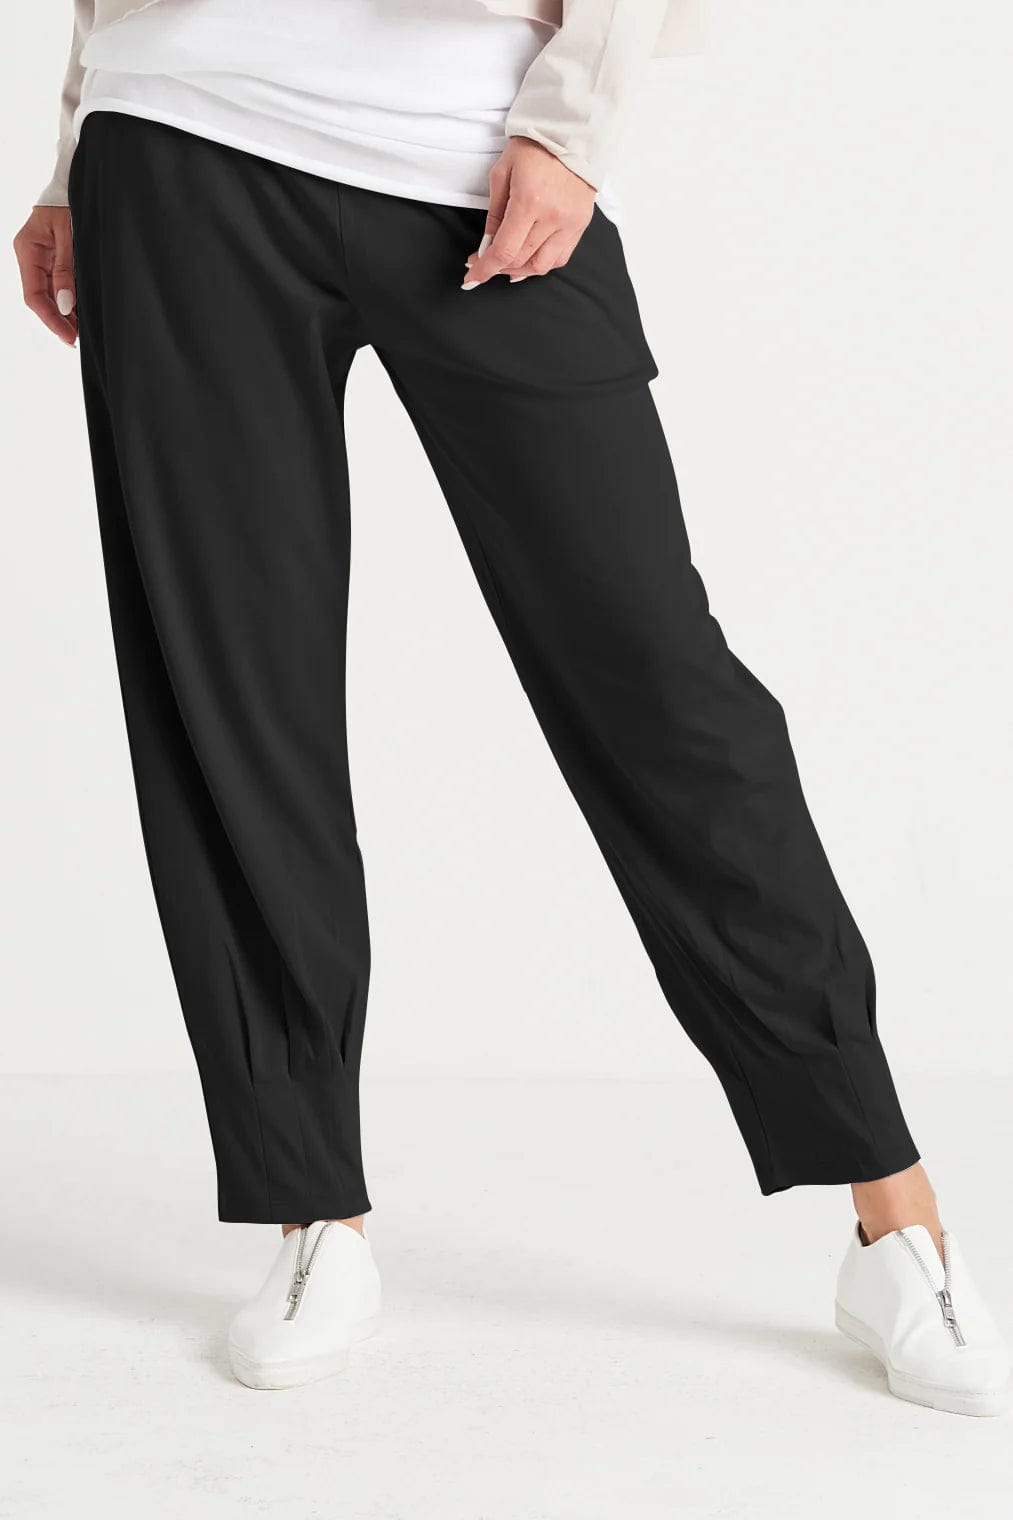 PLANET by Lauren G Women's Pants Black / 1 Pima Cotton Pinched Pleat Pants